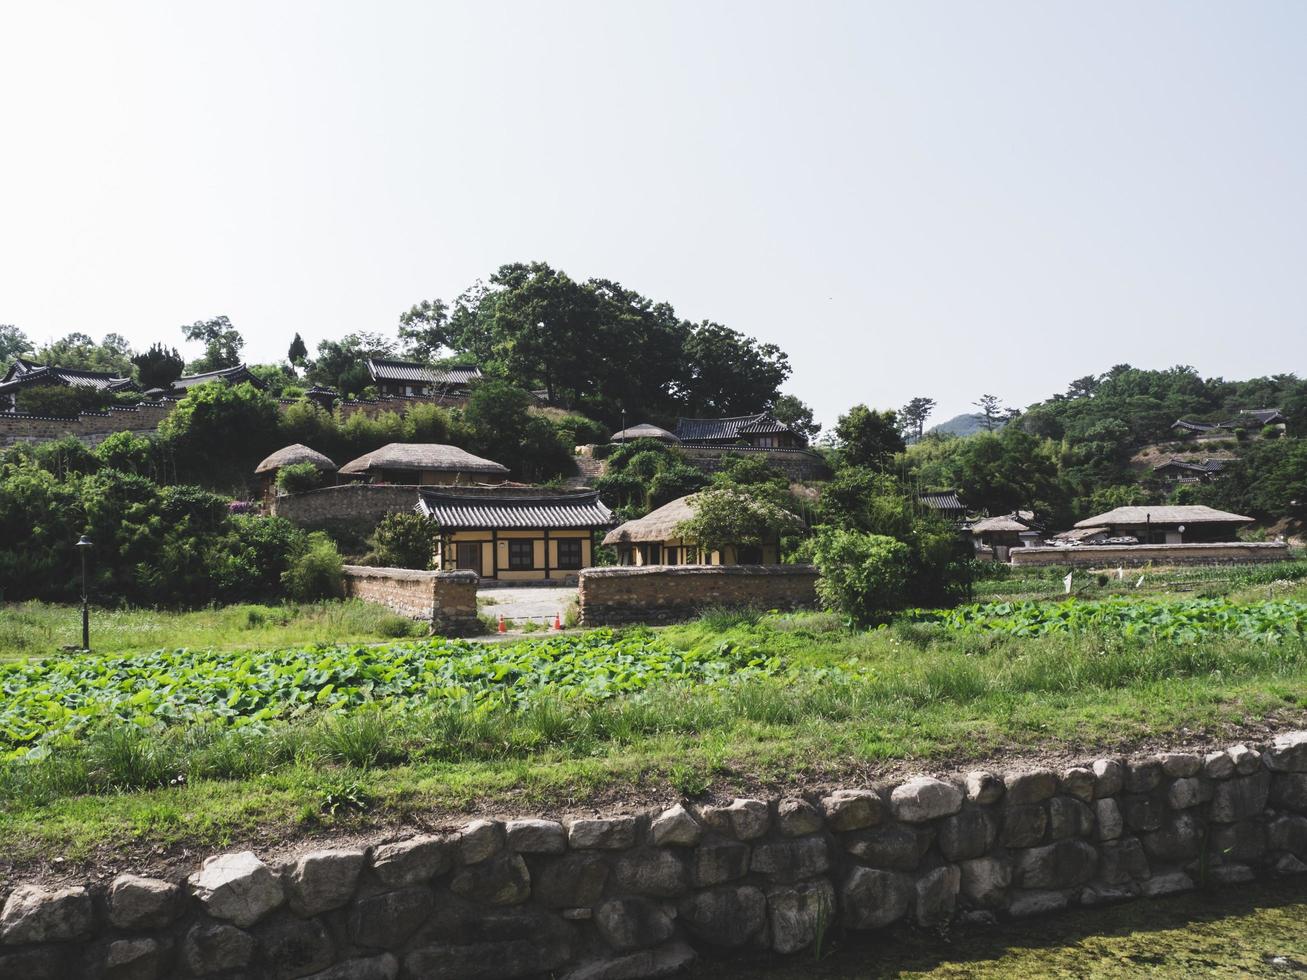 Aziatische huizen in het traditionele dorp, Zuid-Korea foto